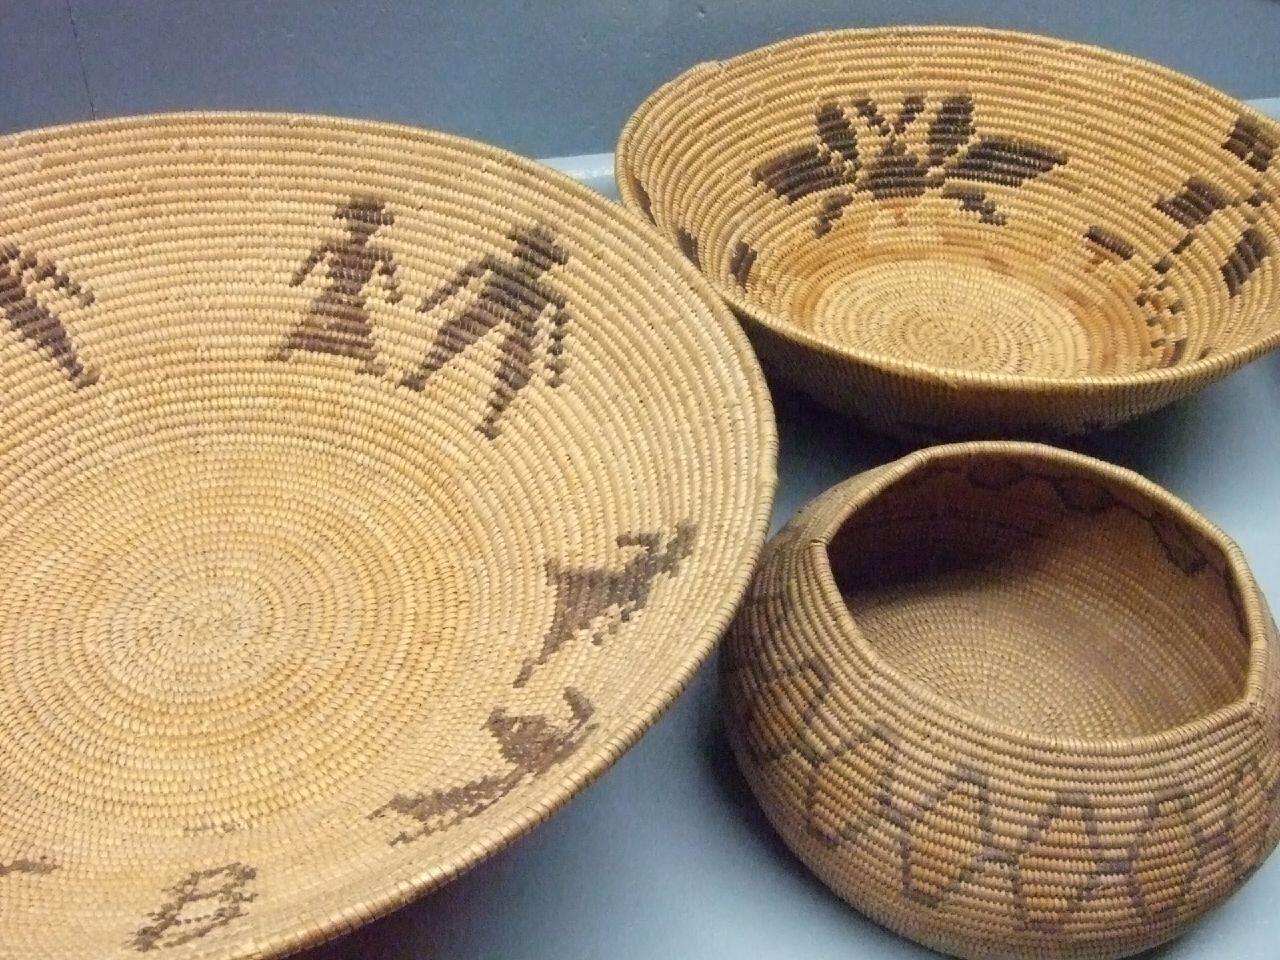 Native American Chumash Tray and baskets